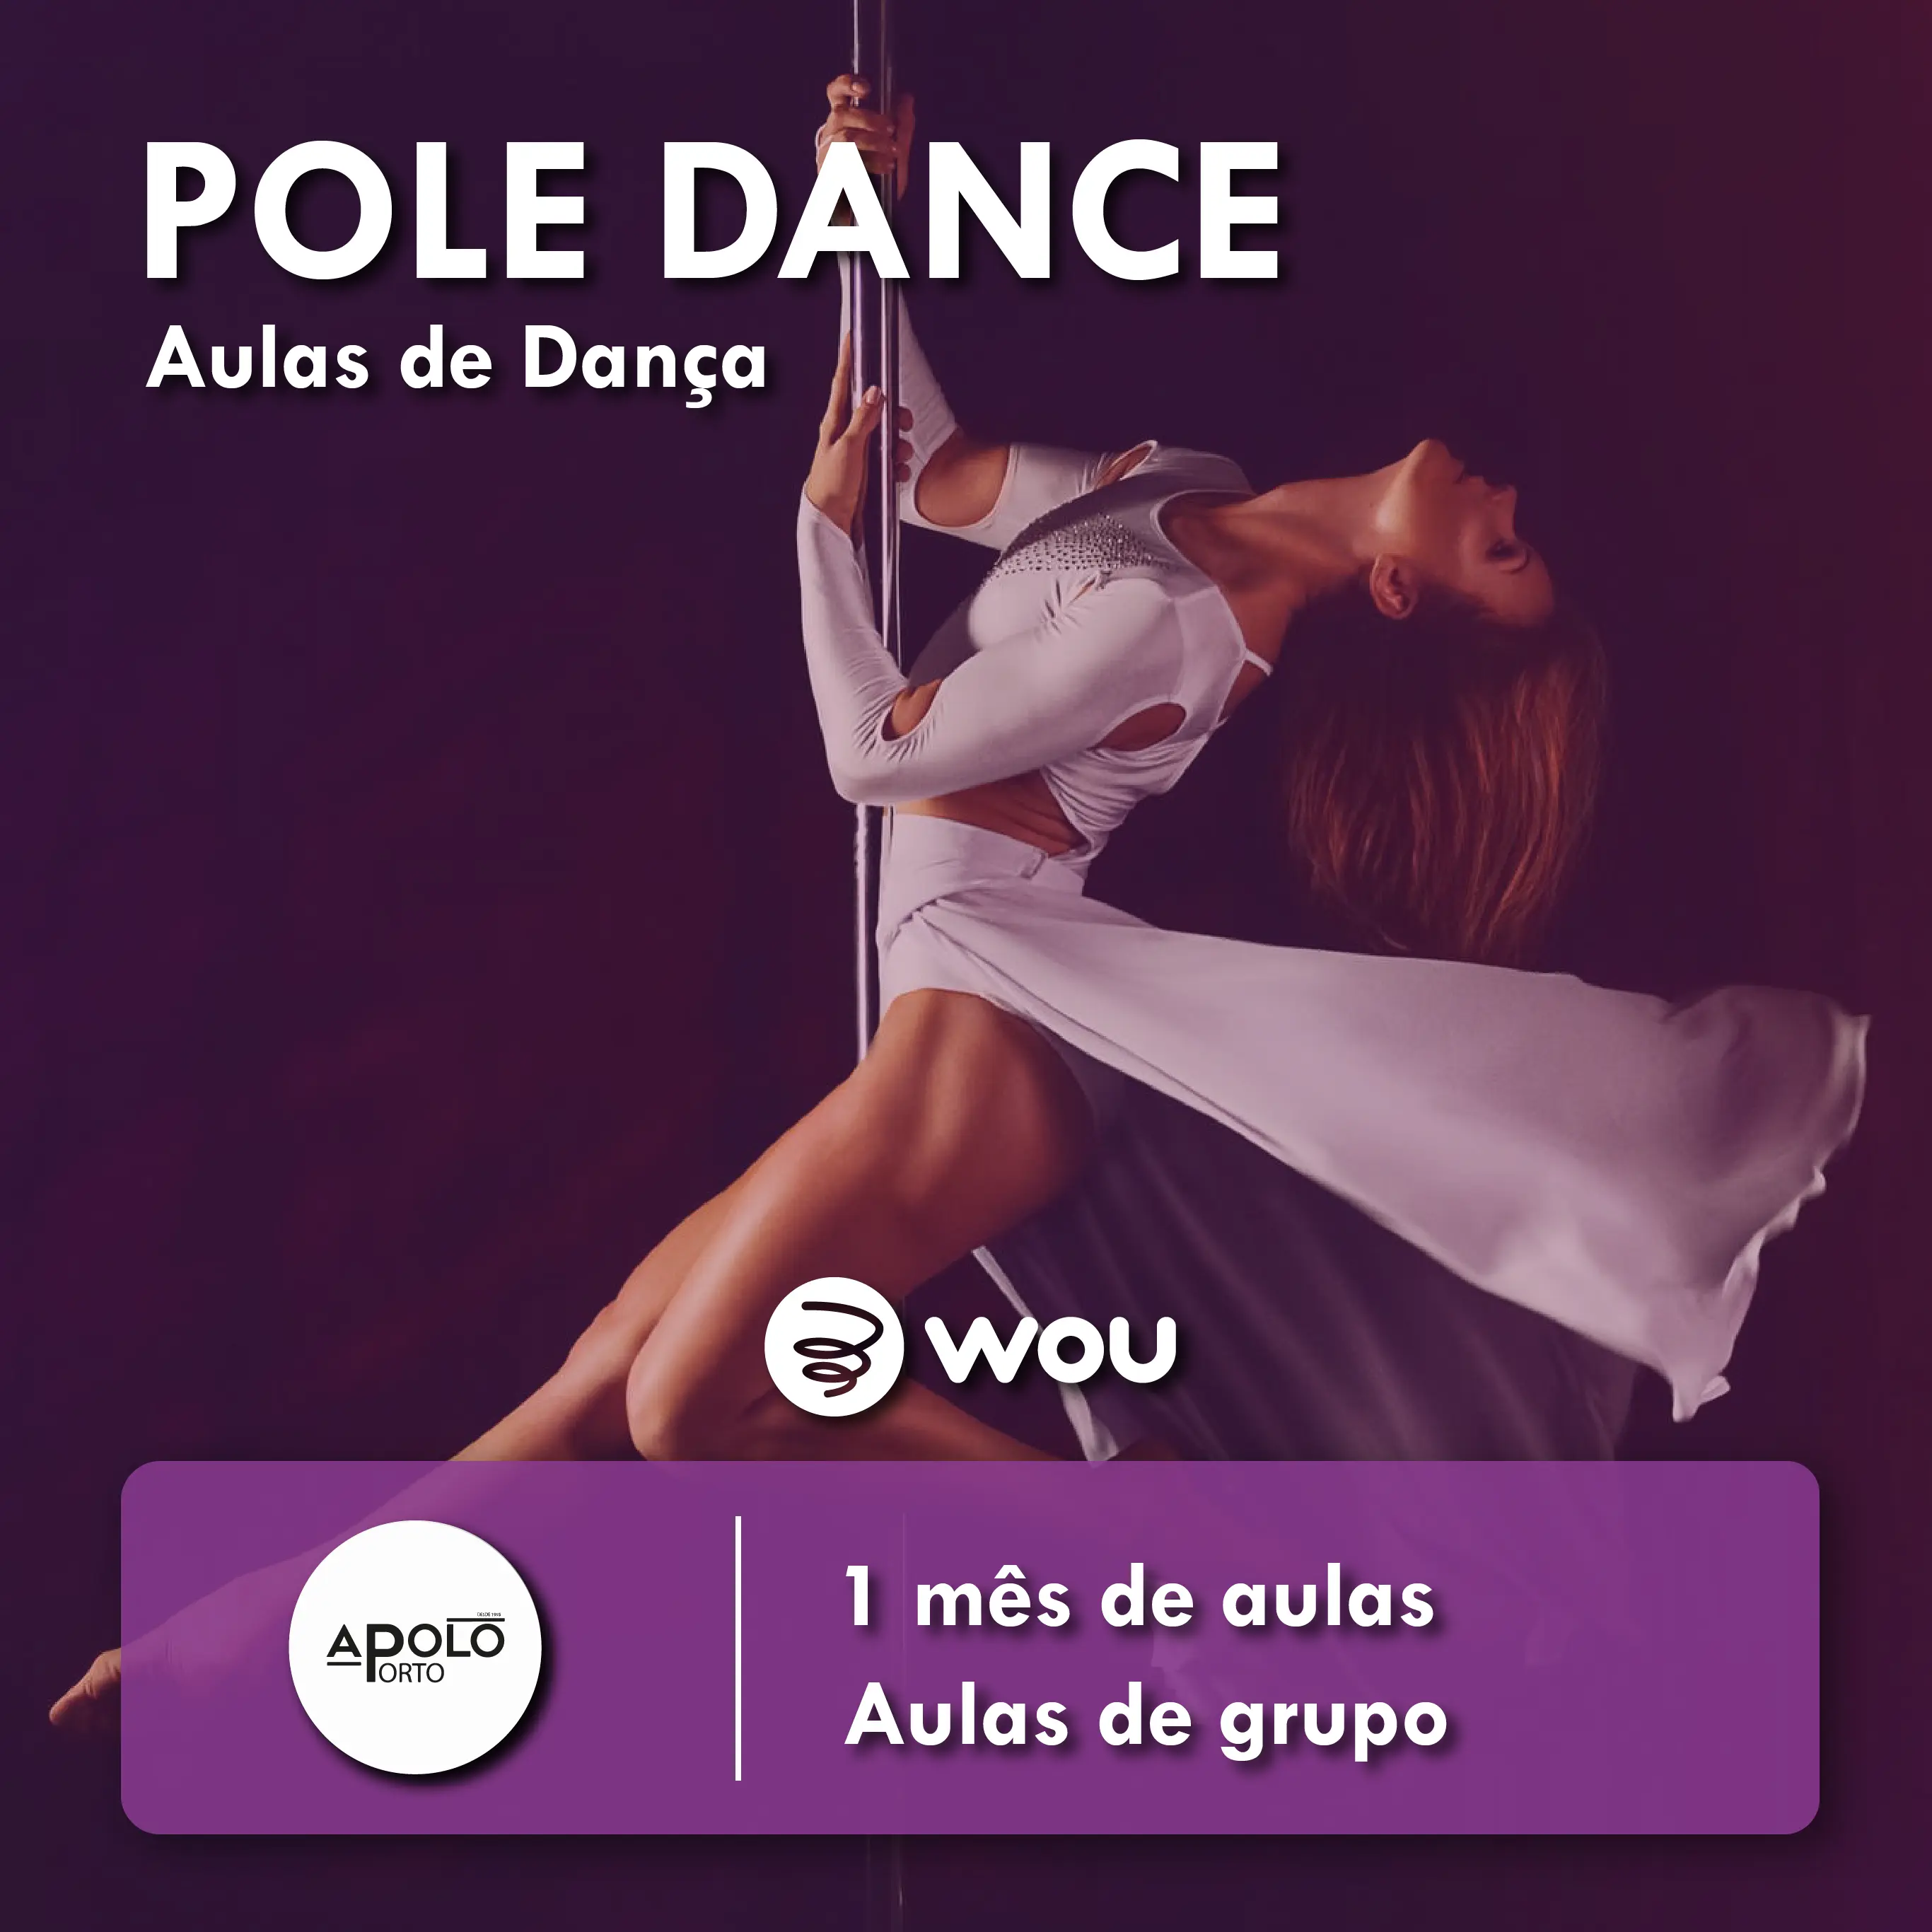 Pole Dancing Classes in Porto